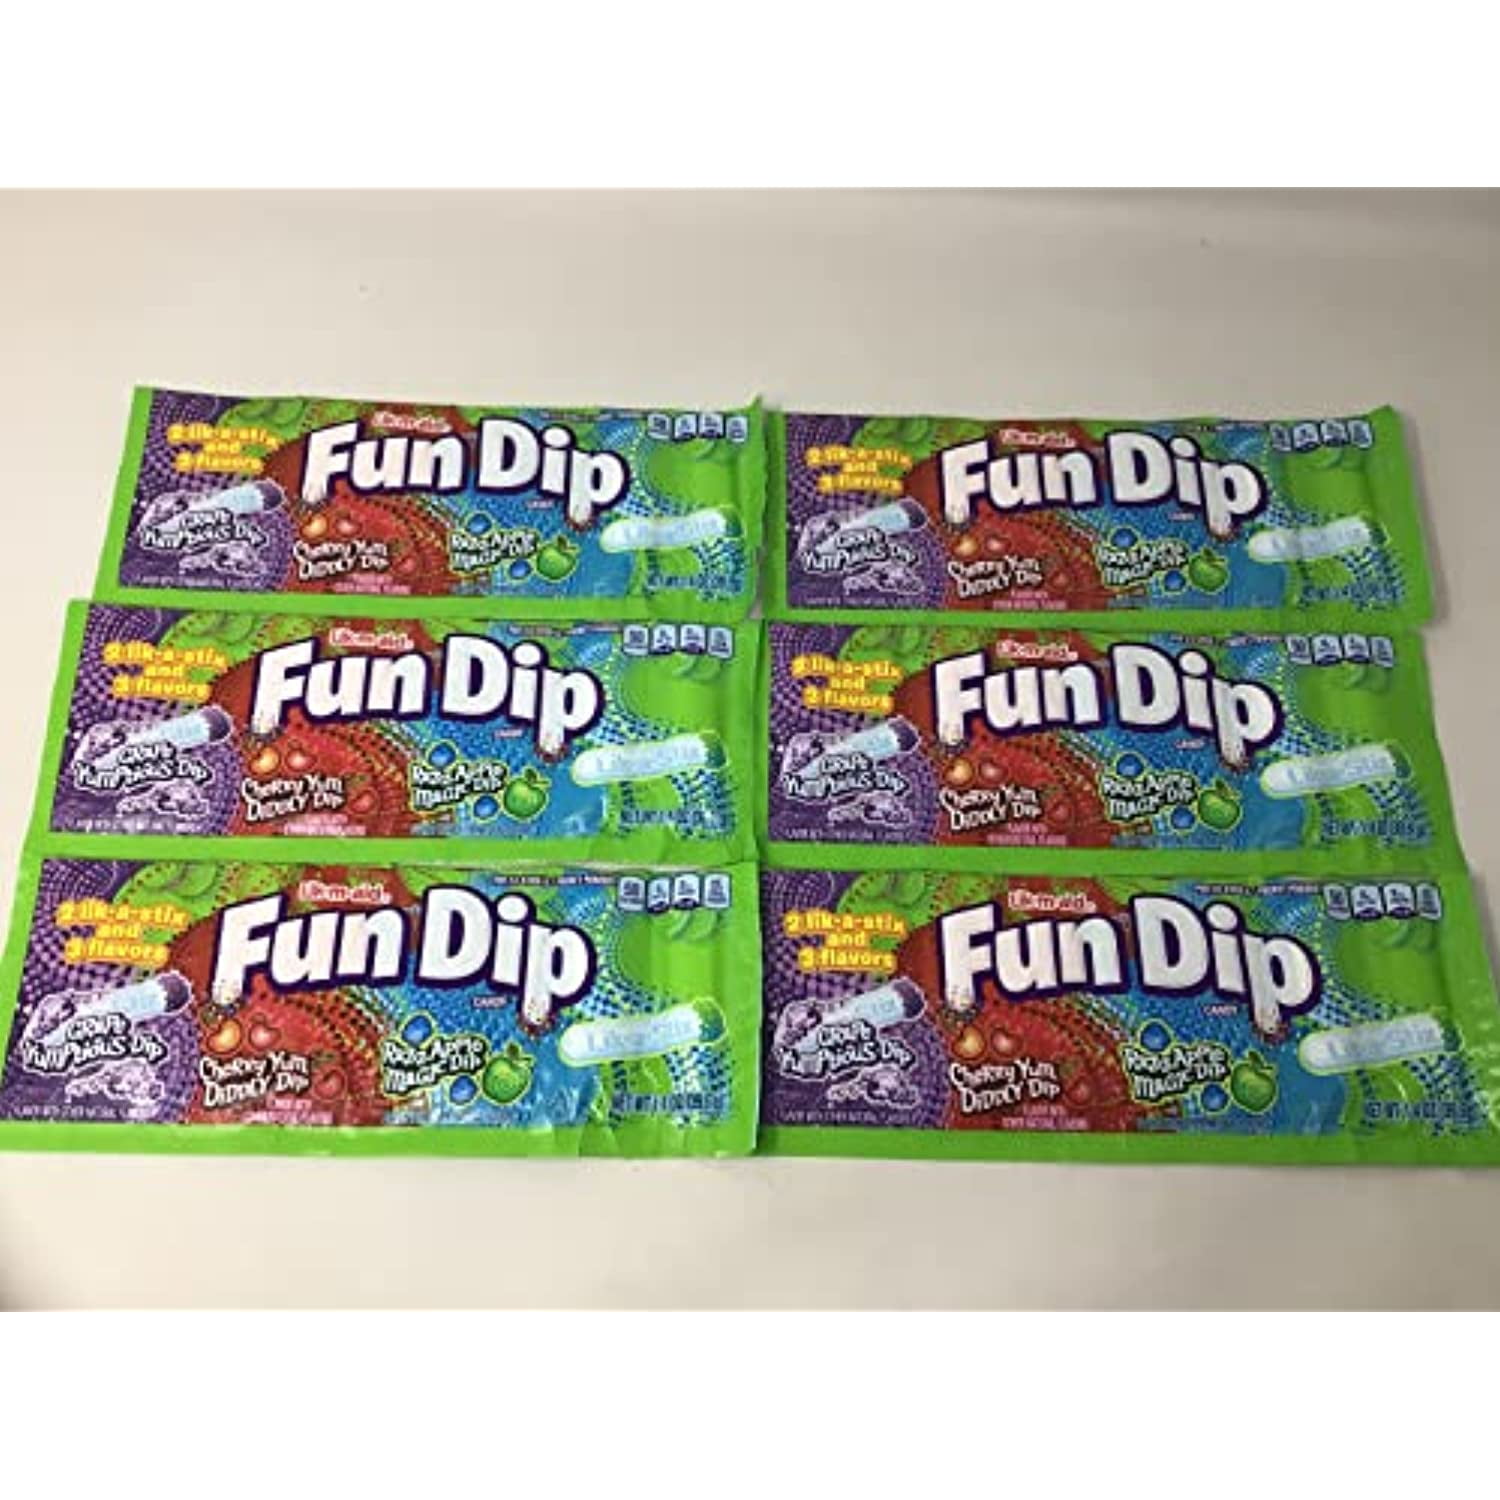 Fun Dip 3 Flavor Pack Fun Dip Razzapple Magic Dip, Cherry Yum Diddly